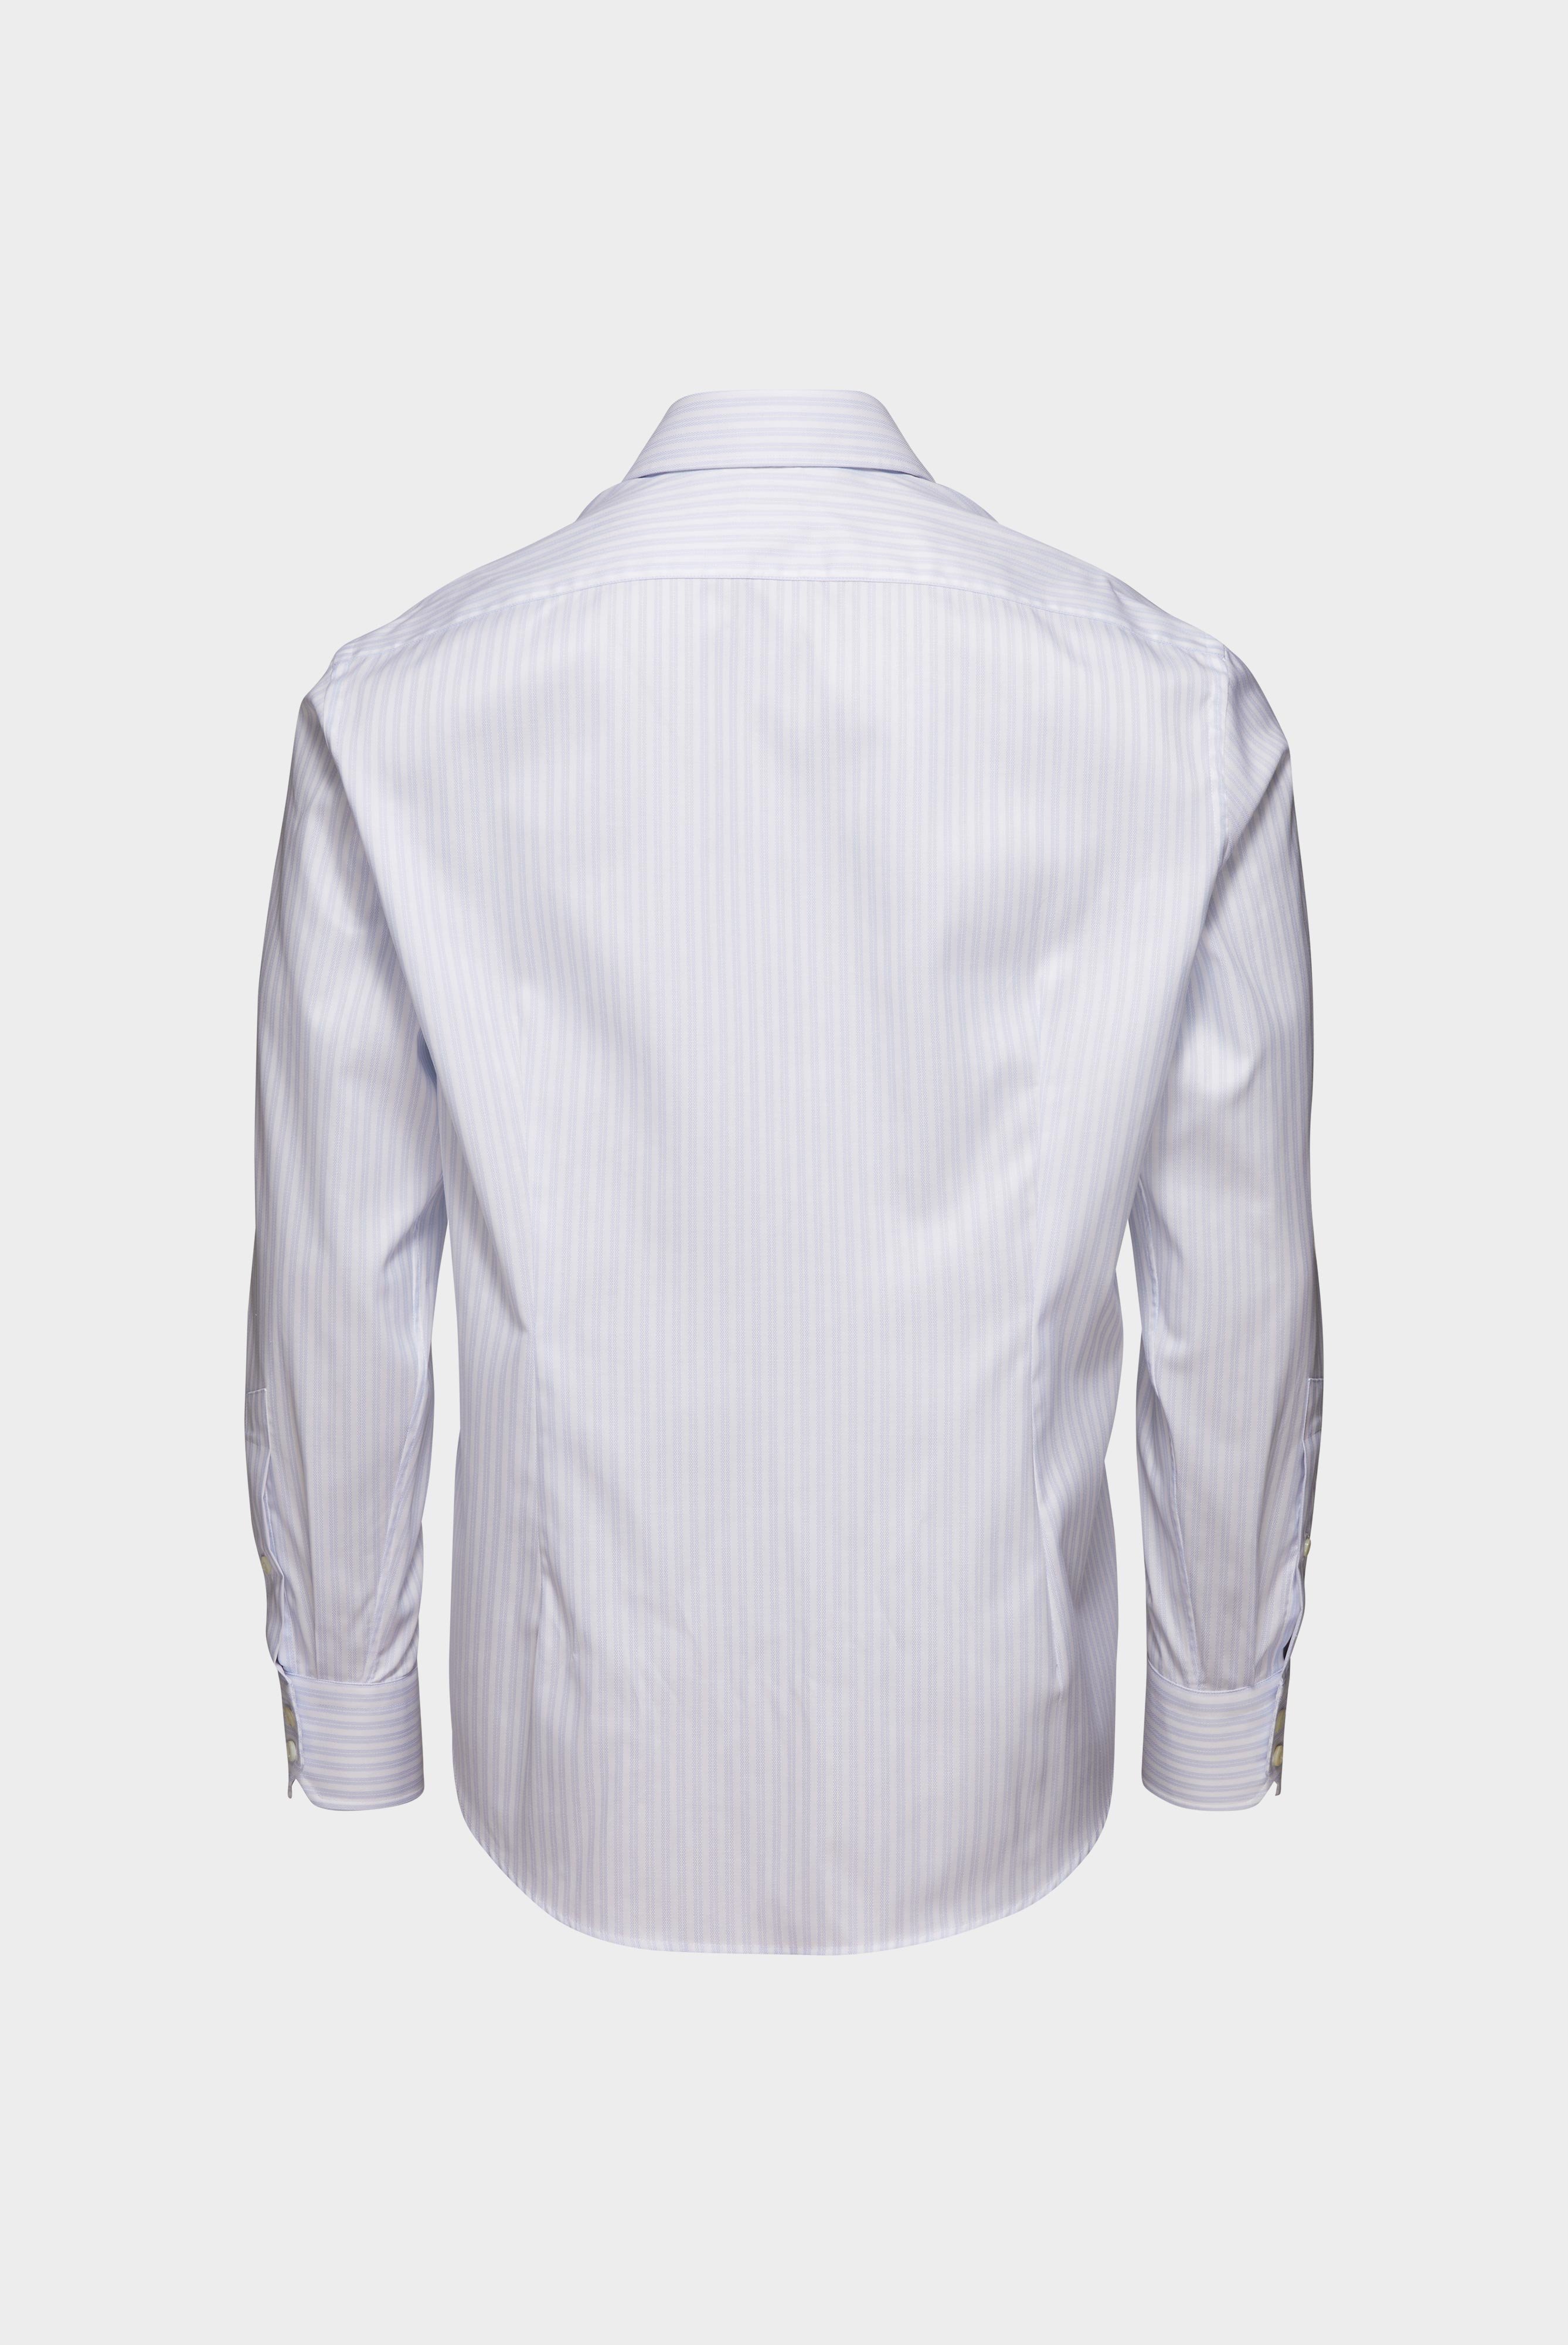 Bügelleichte Hemden+Bügelfreies Hemd mit Streifen Tailor Fit+20.2020.BQ.161106.007.38